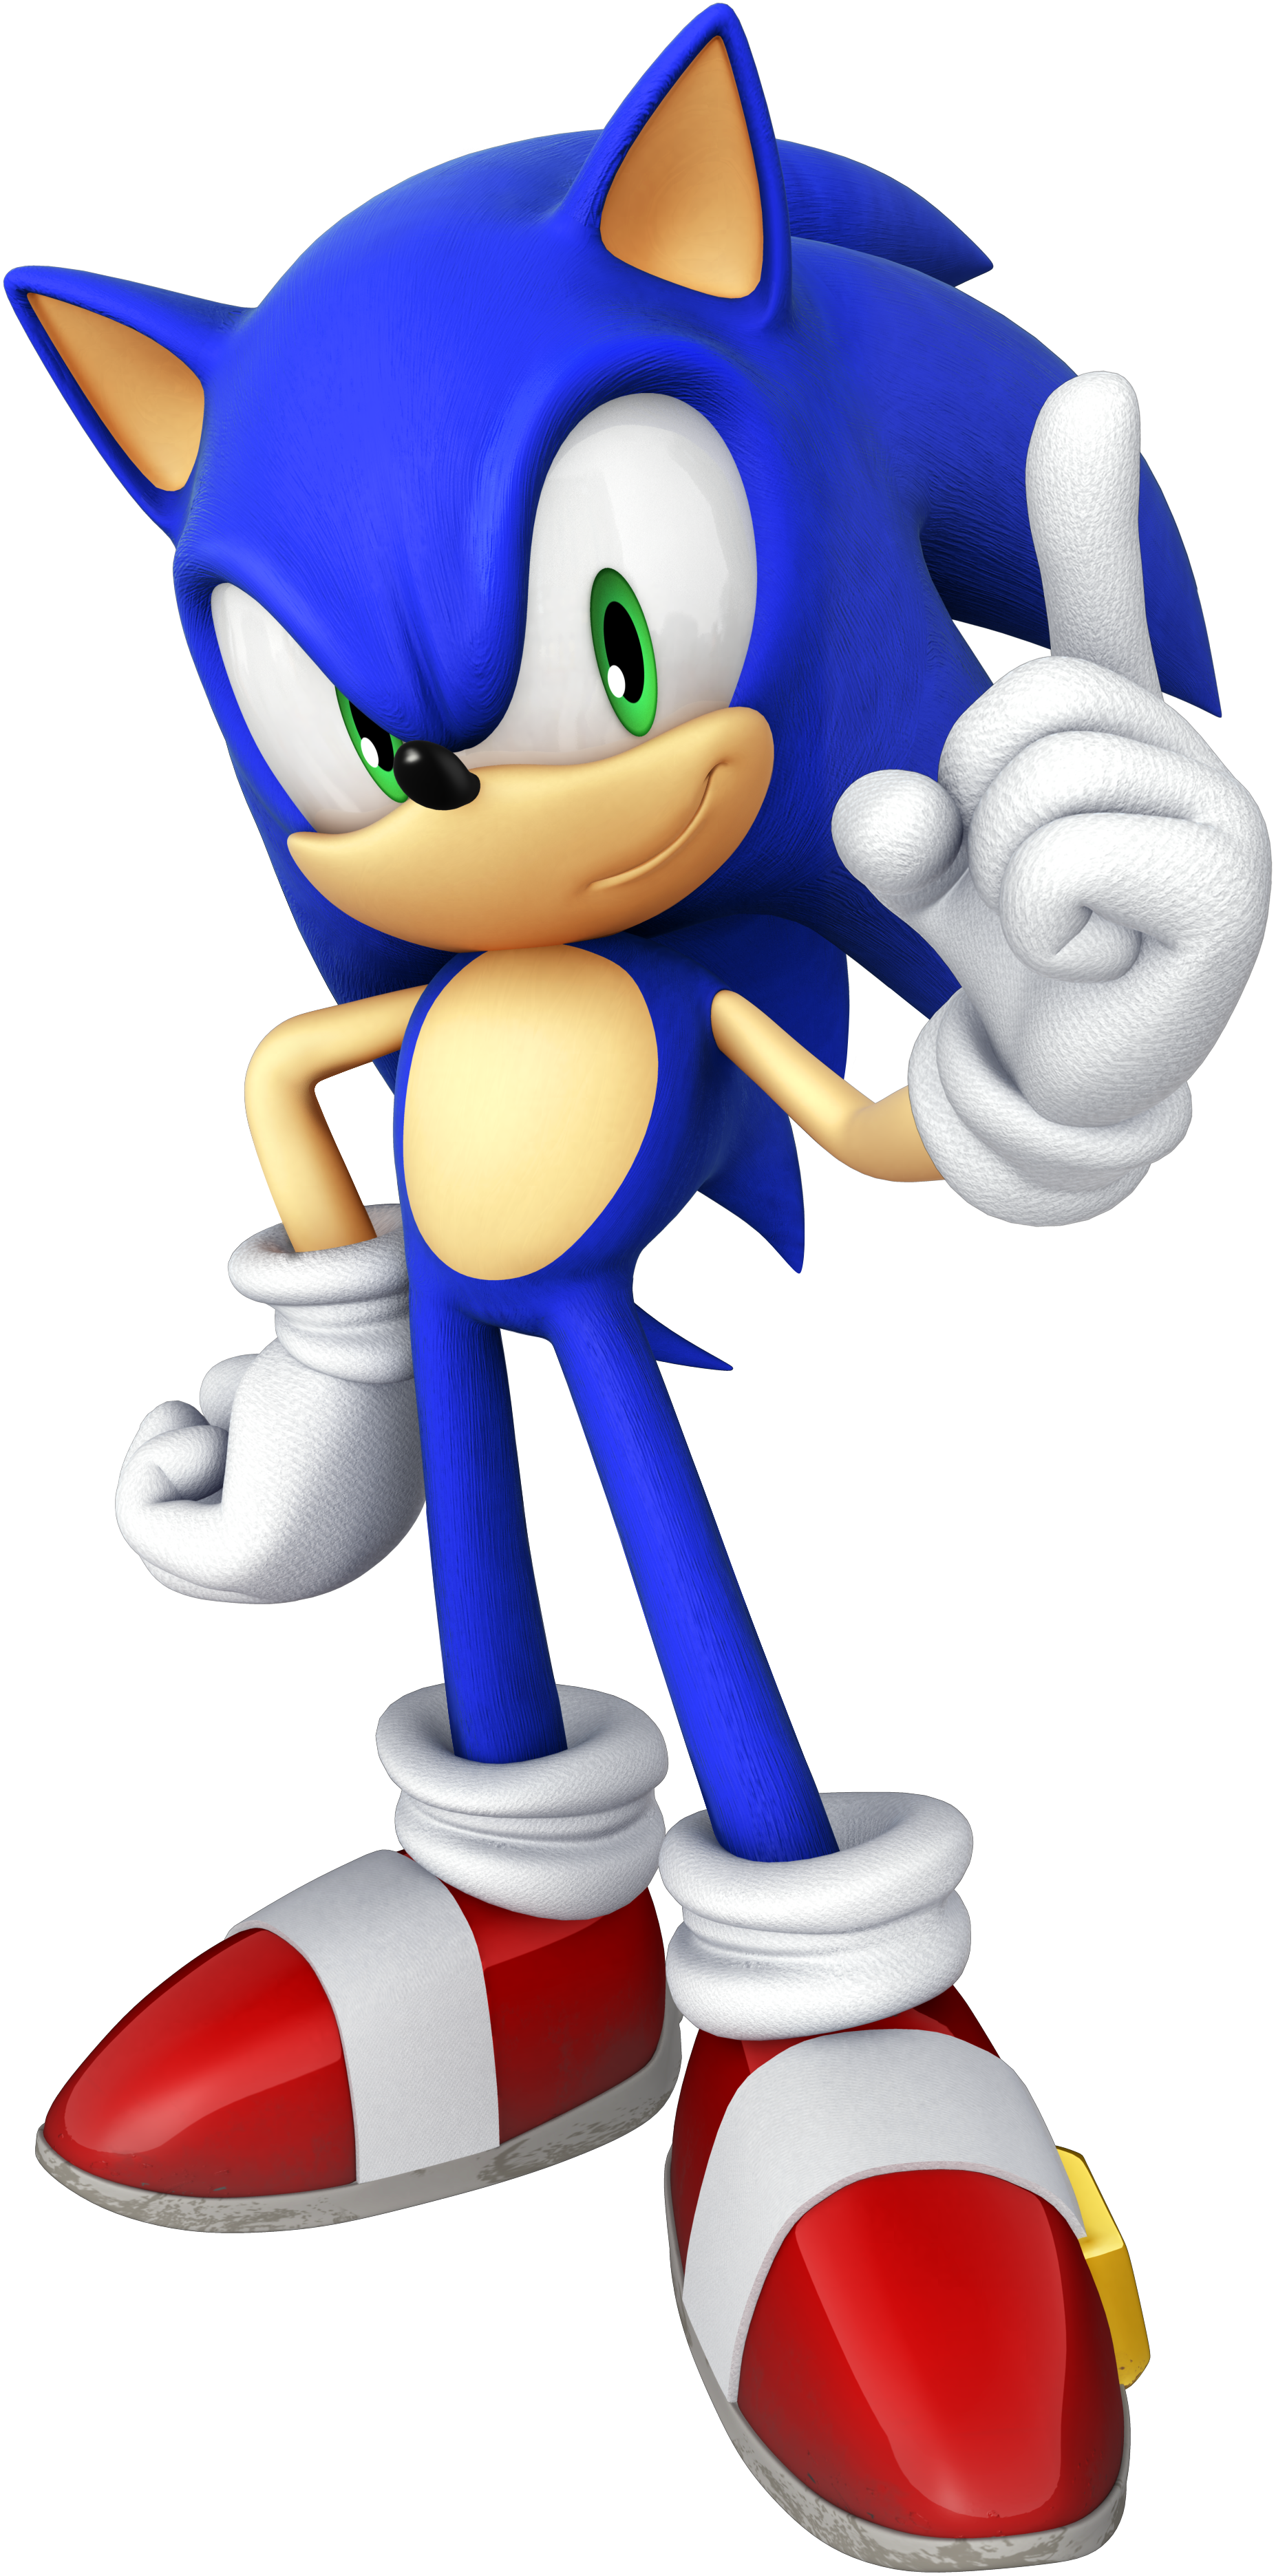 Sonic the Hedgehog (jogo eletrônico de 2006) – Wikipédia, a enciclopédia  livre